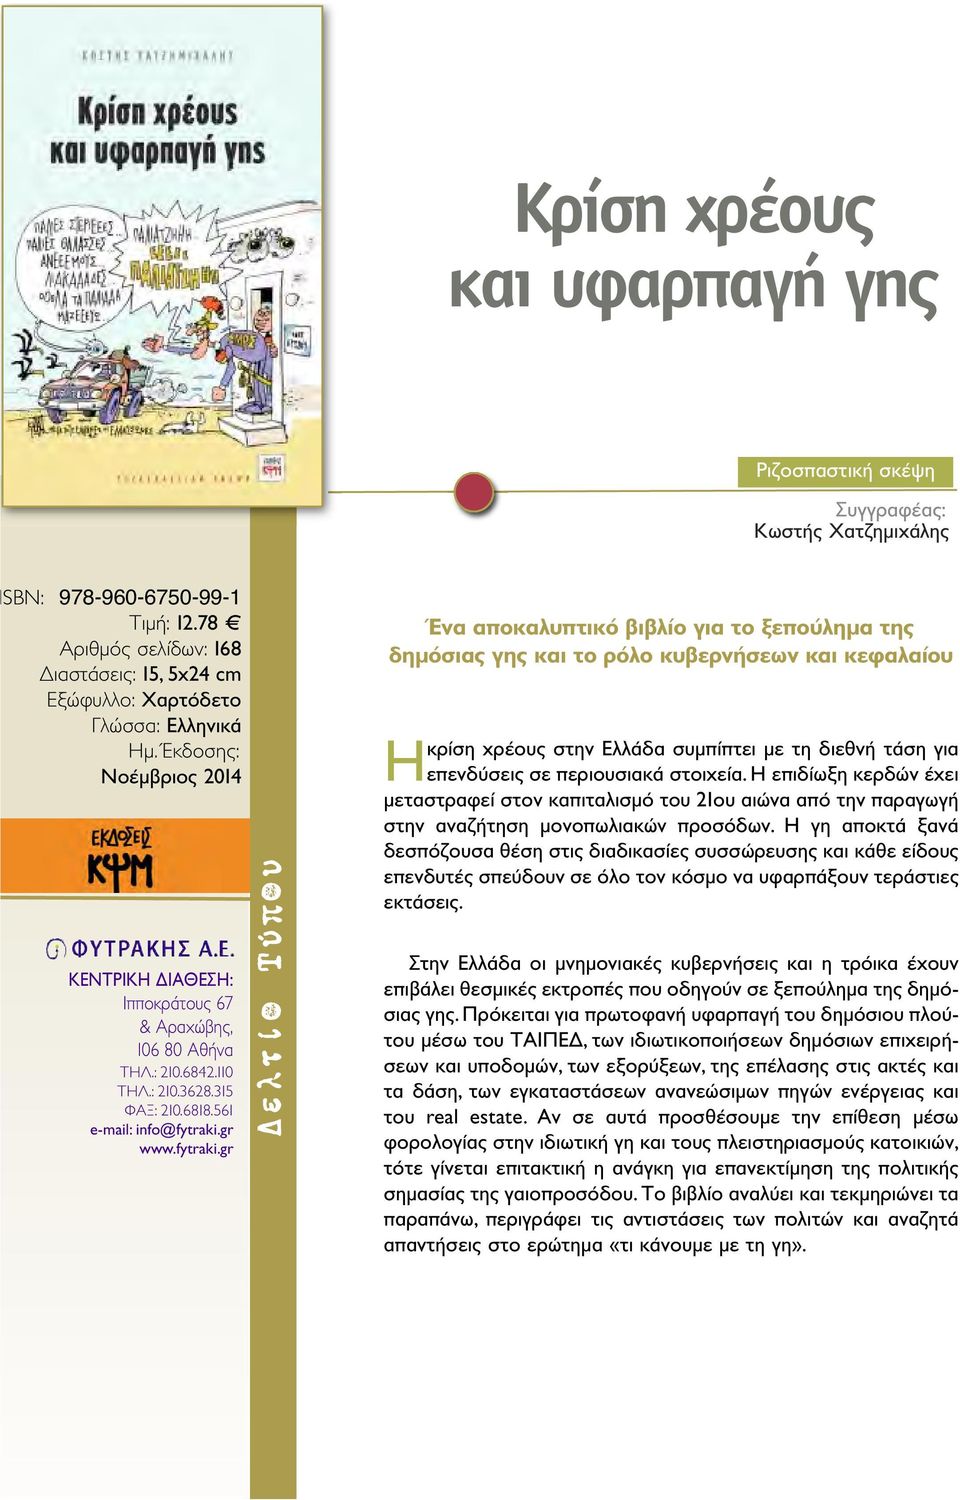 Έκδοσης: Νοέμβριος 2014 Ένα αποκαλυπτικό βιβλίο για το ξεπούλημα της δημόσιας γης και το ρόλο κυβερνήσεων και κεφαλαίου Ηκρίση χρέους στην Ελλάδα συμπίπτει με τη διεθνή τάση για επενδύσεις σε